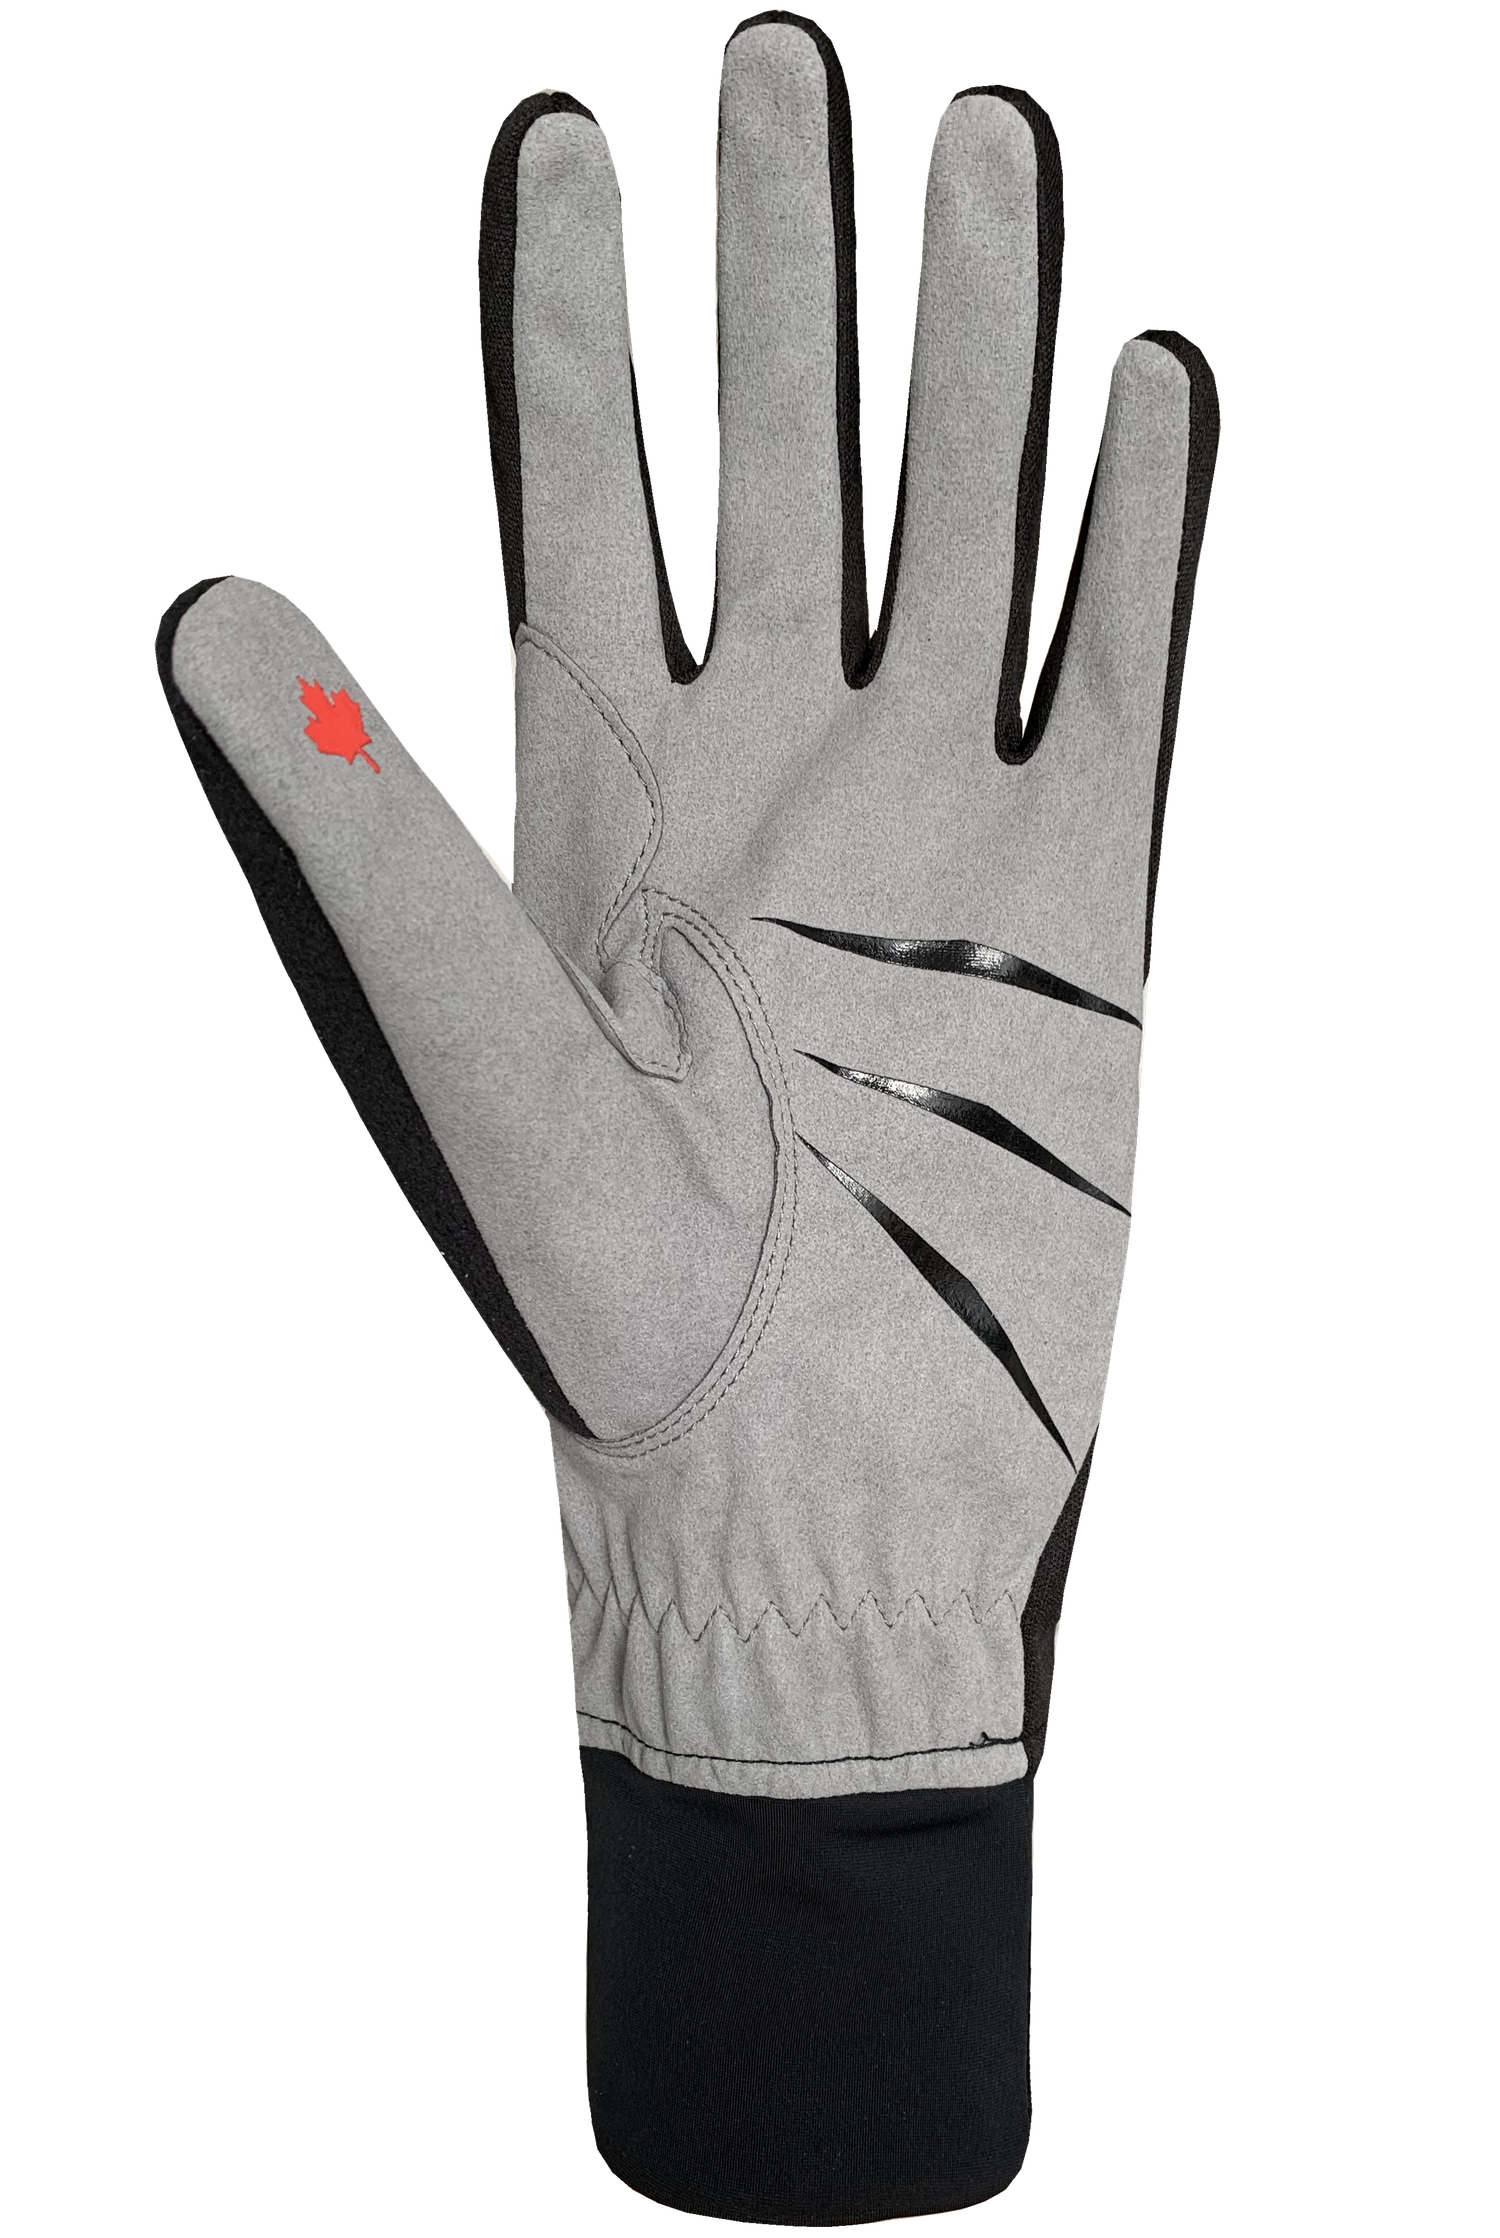 Cross Country Training Gloves - Women, Black/Red/White